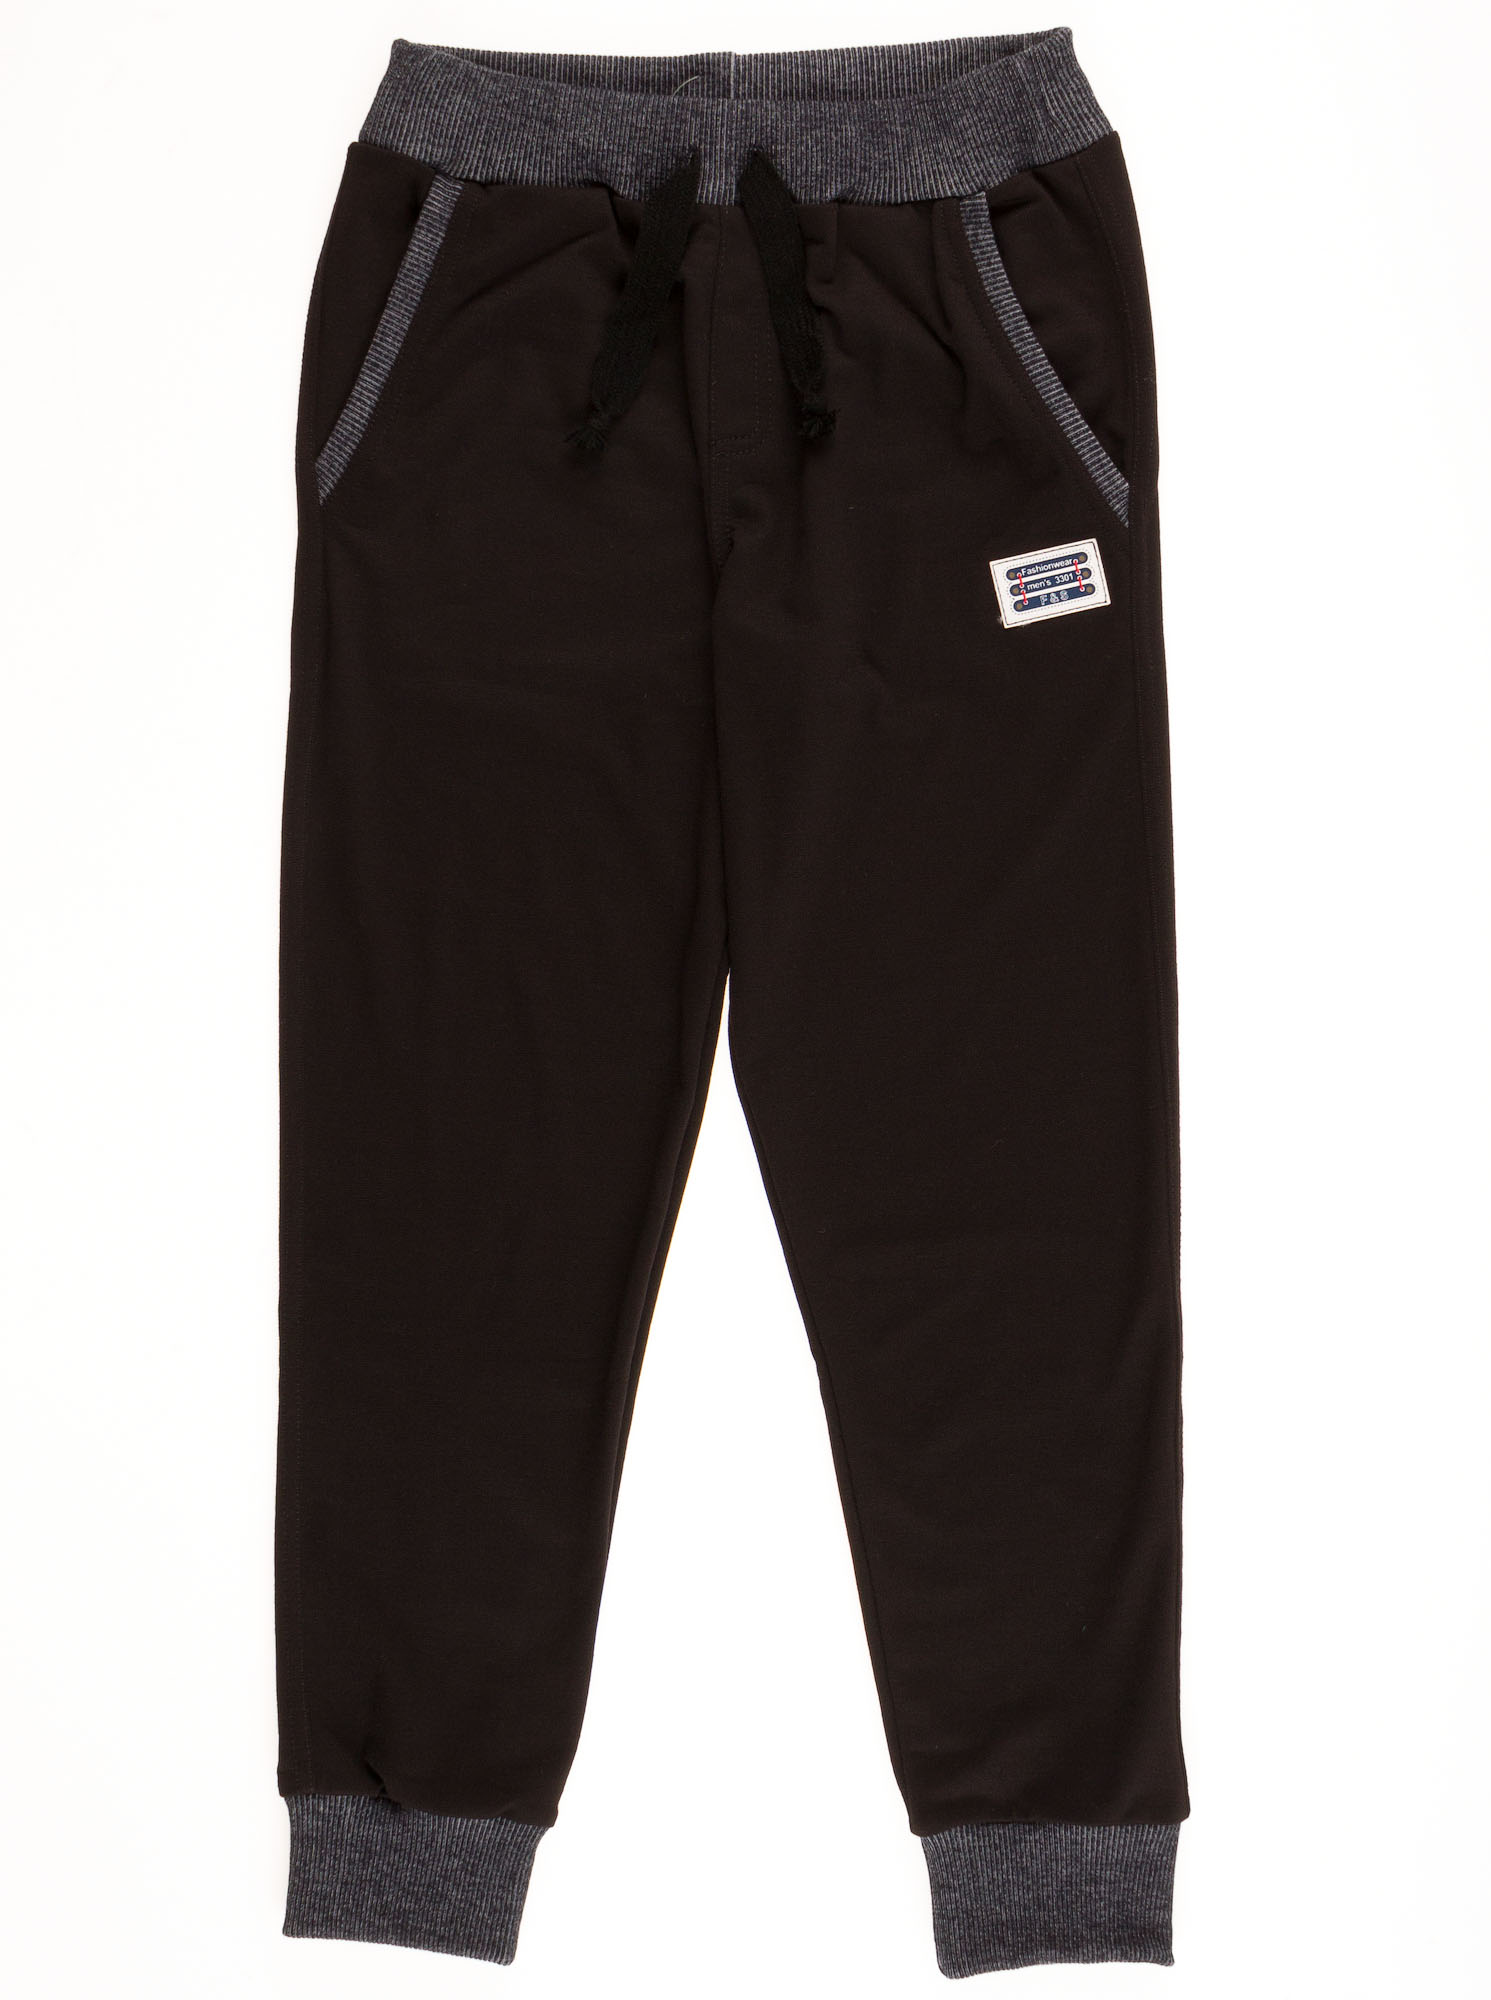 Спортивные штаны для мальчика  Mevis черные to 30-01 - ціна